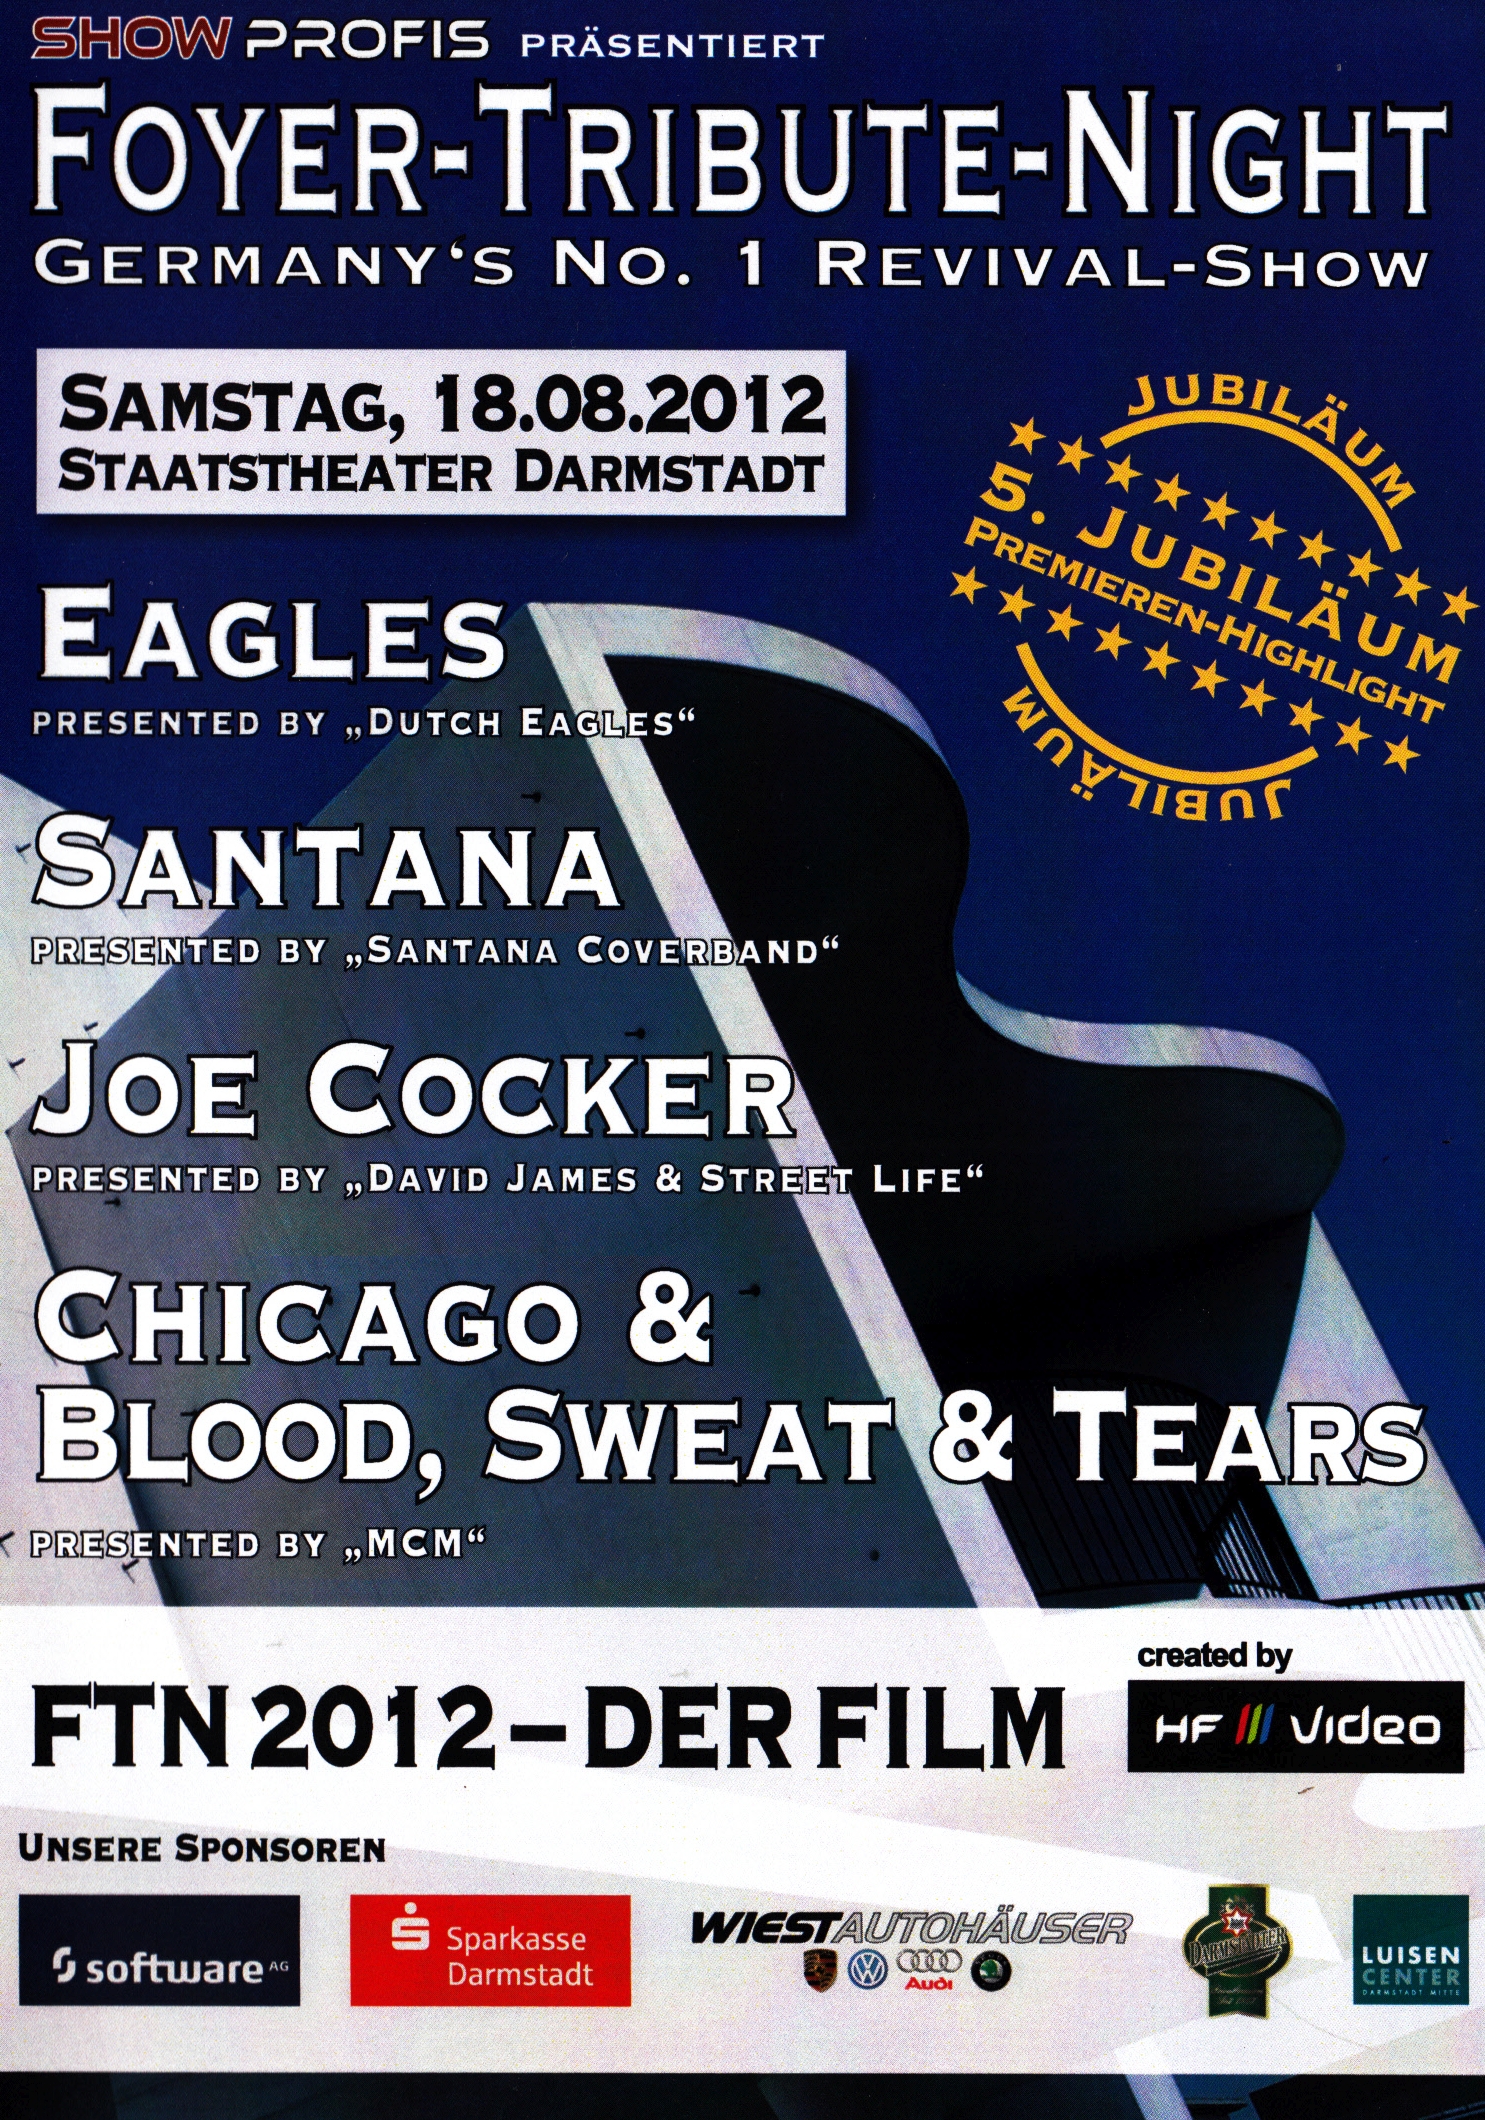 Foyer Tribute Night 2012
Der Jubiläumsfilm
Laufzeit 1 Stunde 55 Minuten